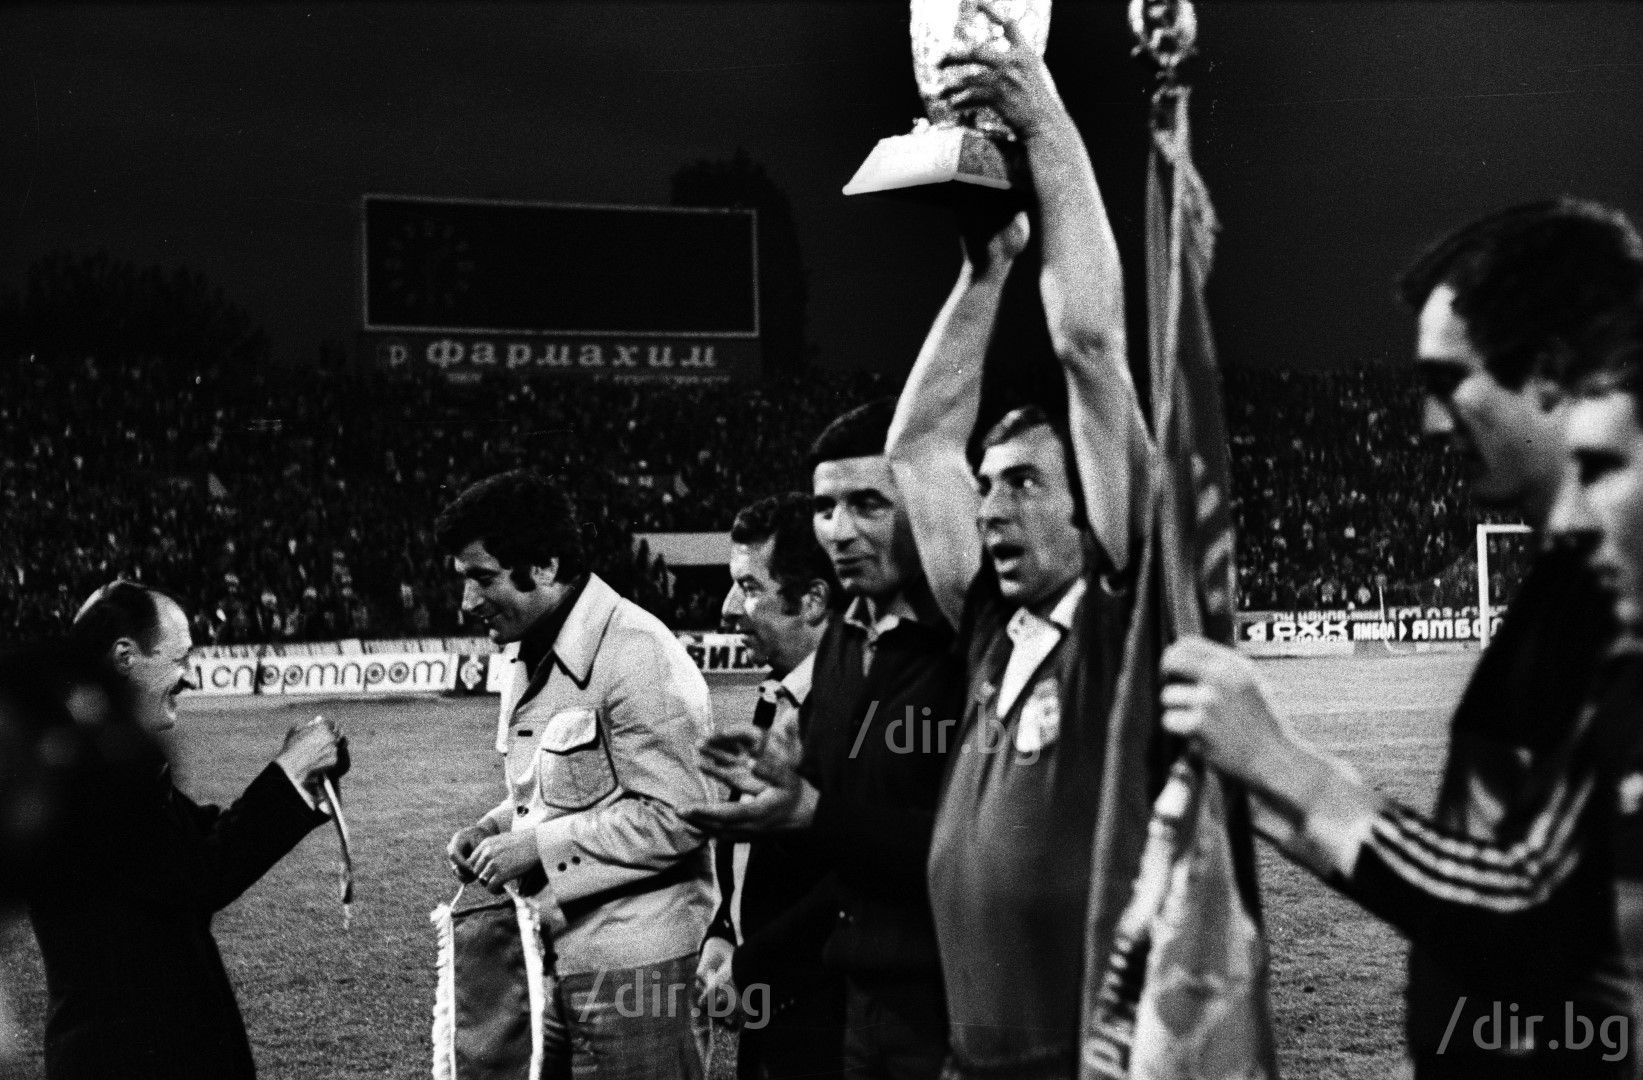 1979 г. Левски печели шампионската титла след победа над ЦСКА в прекия двубой на 30 май. Тодор Барзов е герой с победния гол, купата вдига покойният Павел Панов, а вляво медала си получава друга голяма фигура, която изпратихме наскоро - треньорът тогава Иван Вуцов